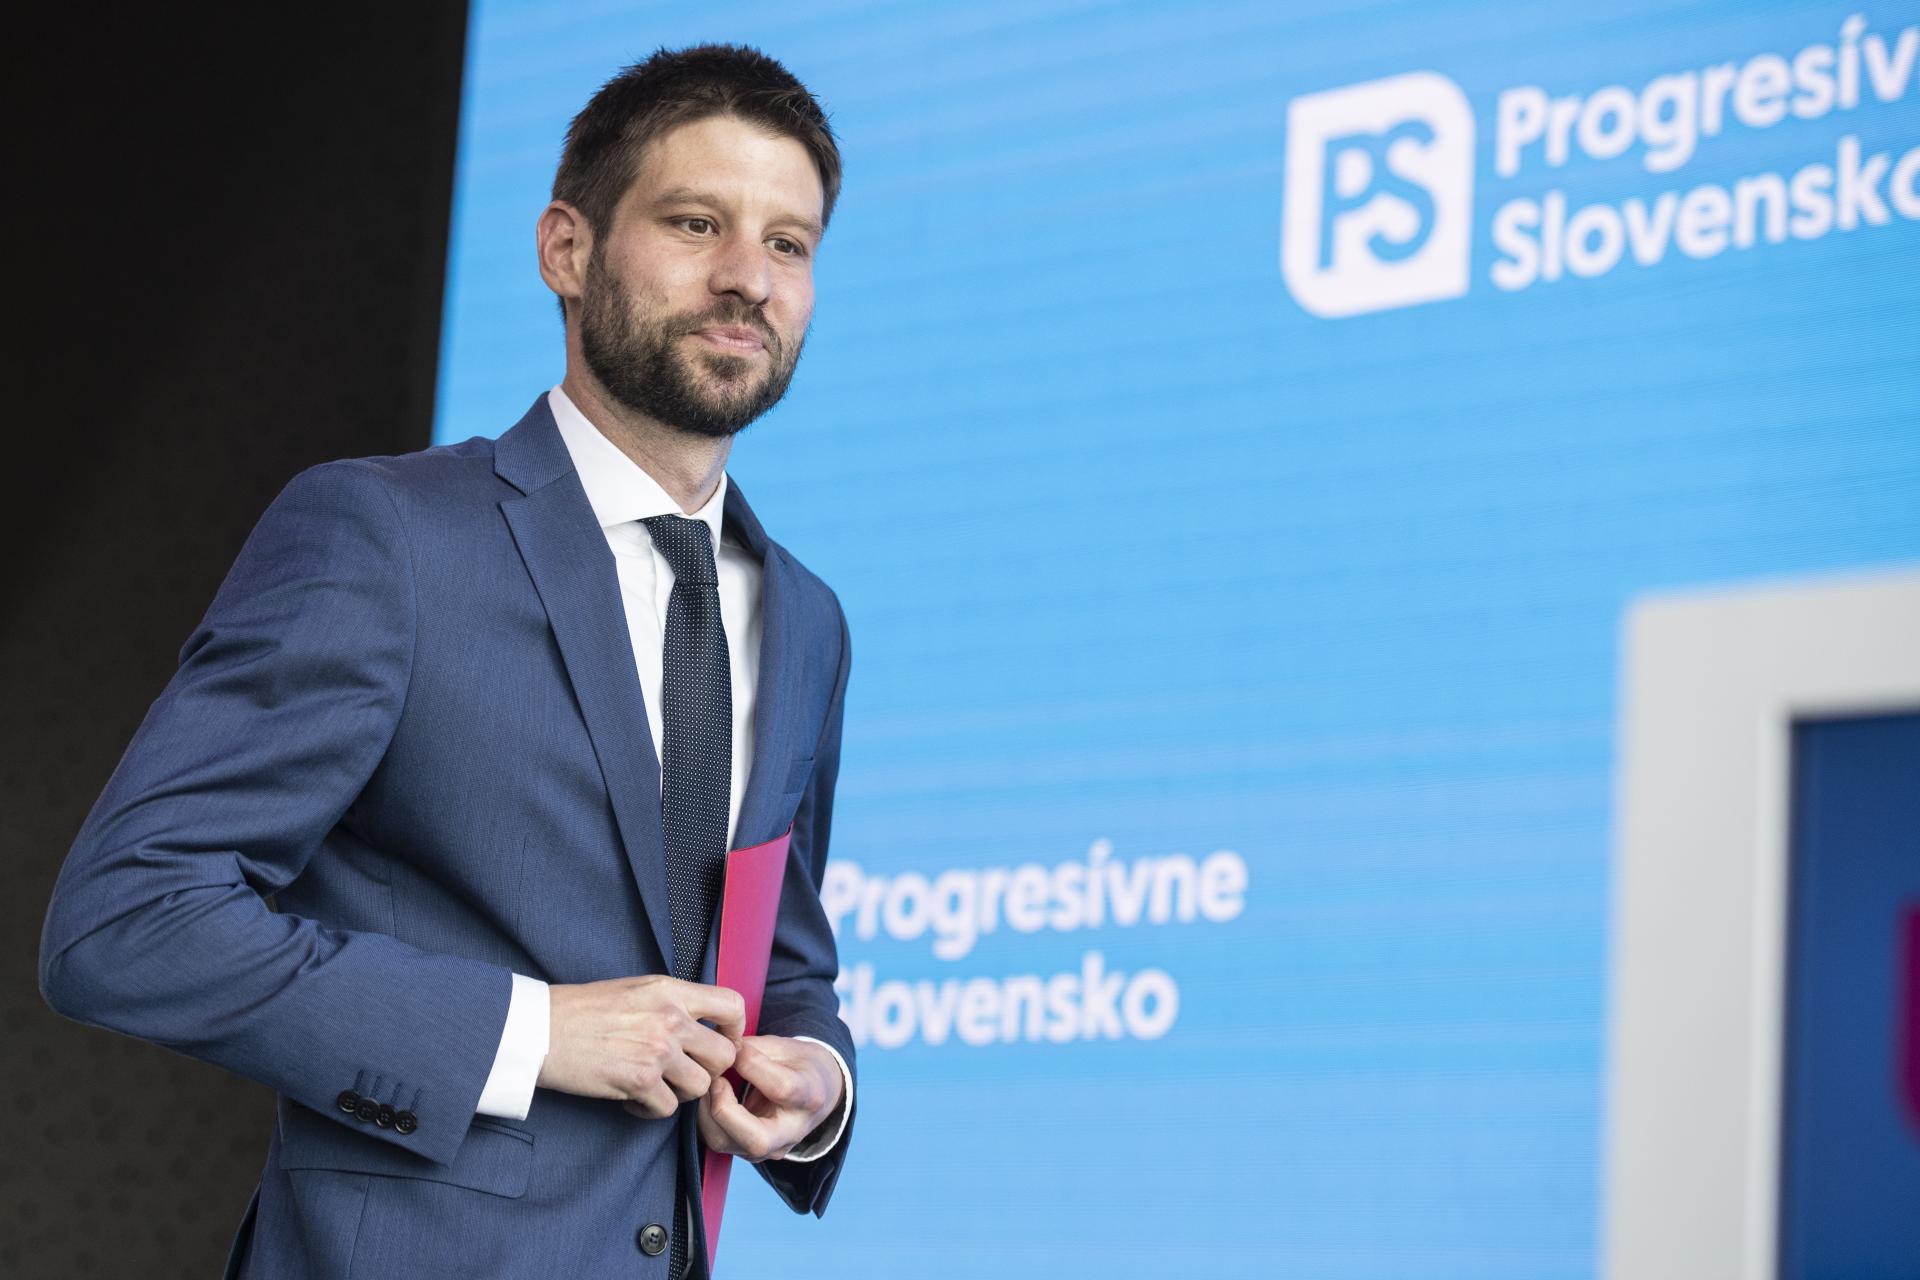 Prieskum AKO: Progresívne Slovensko posilnilo, doťahuje sa na Smer